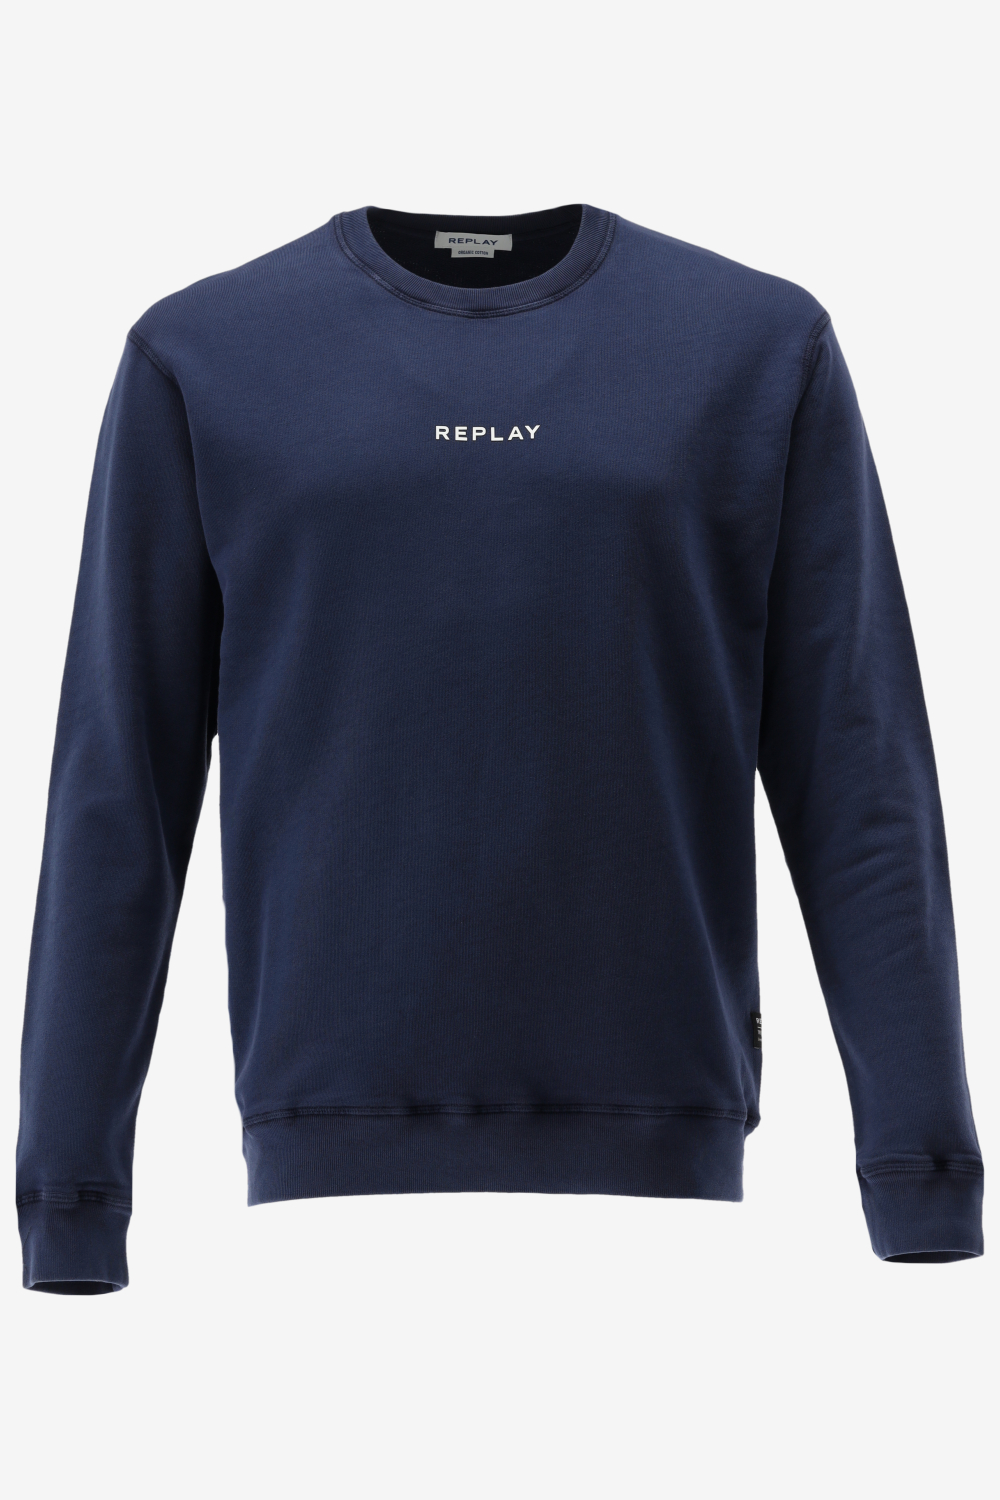 REPLAY sweater